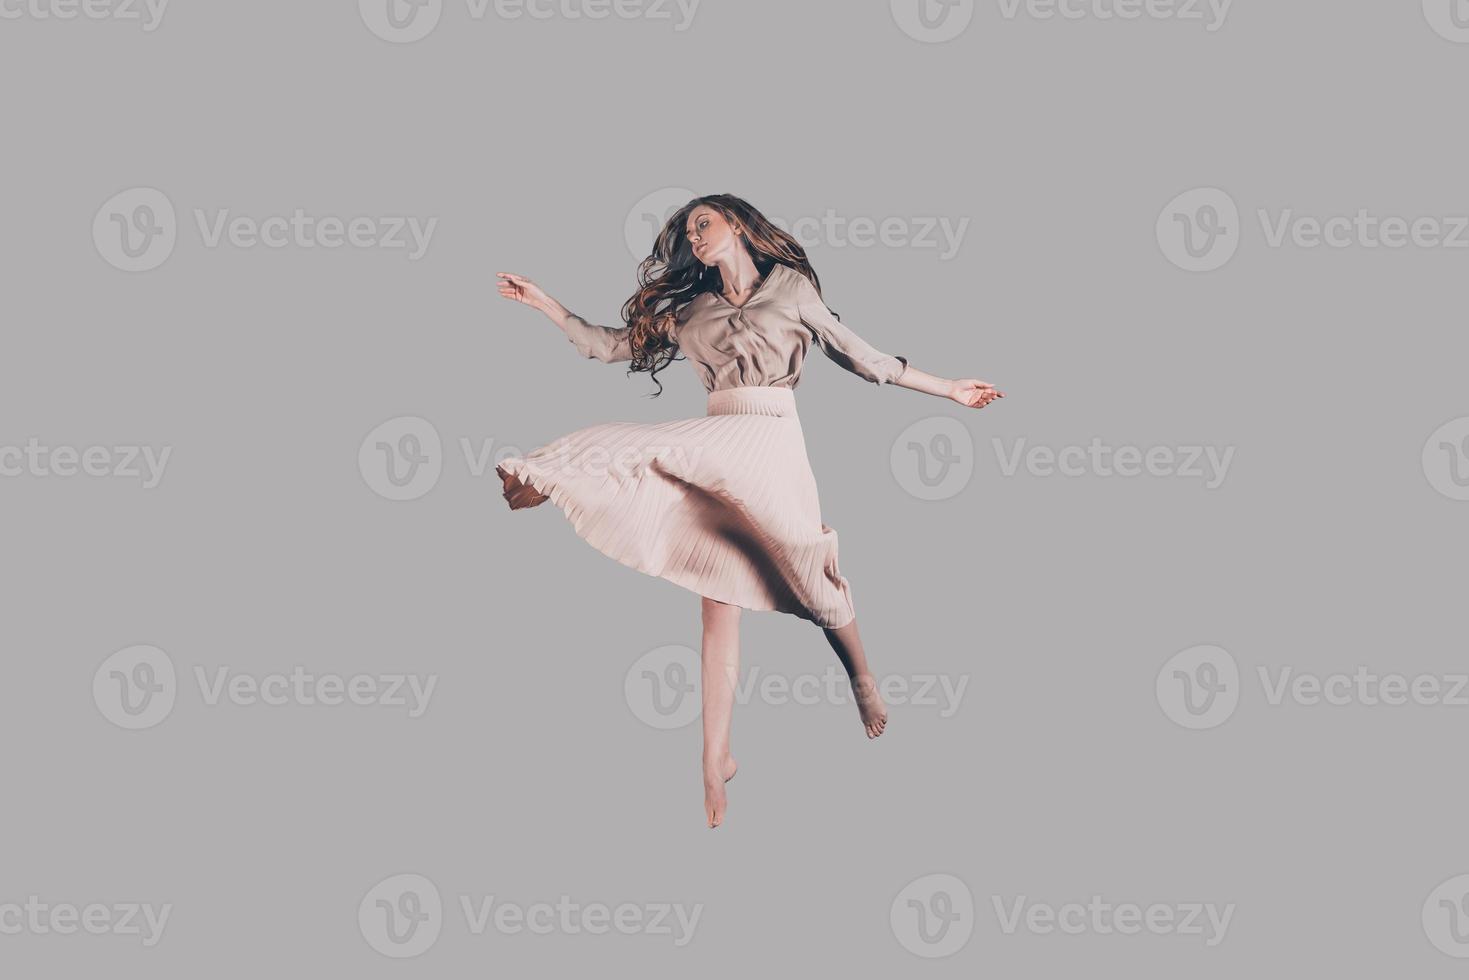 zweven schoonheid. studio schot van aantrekkelijk jong vrouw in jurk zweven in lucht foto